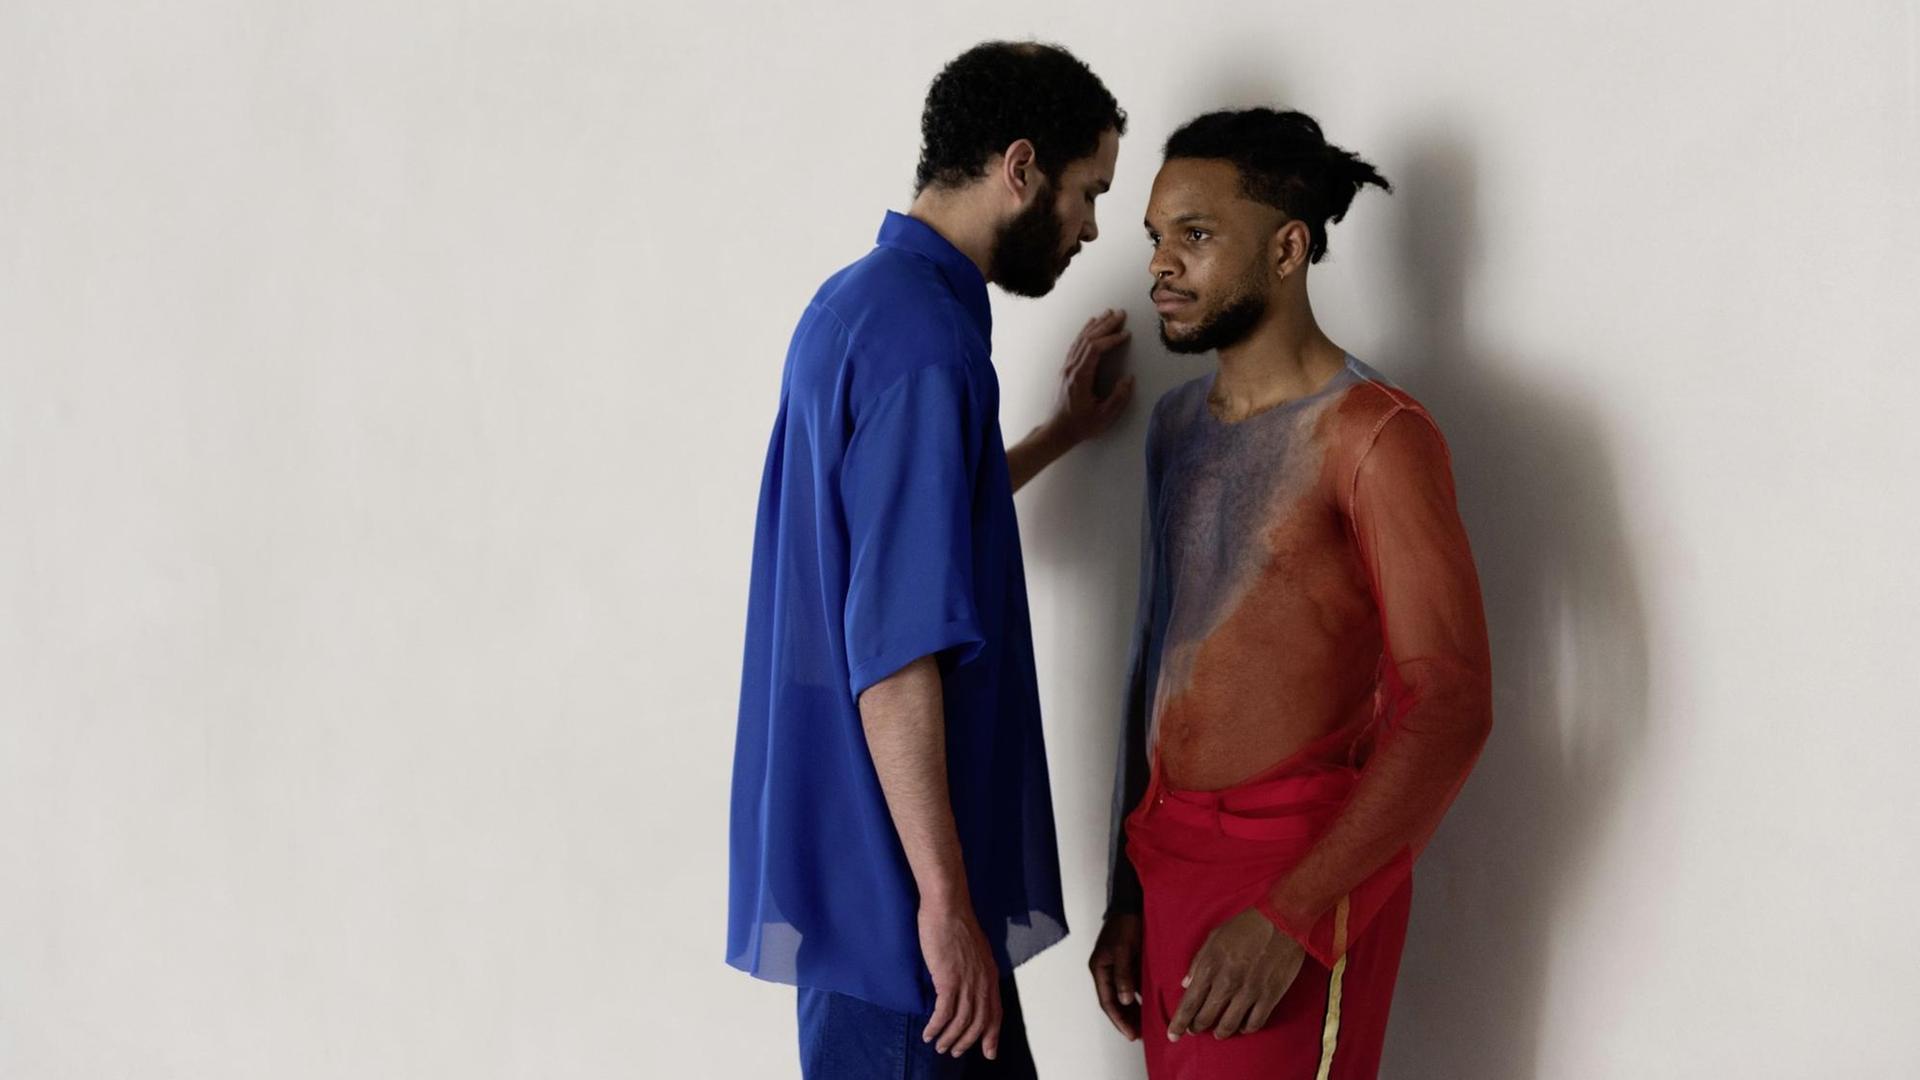 Ein Mann, in einem blauen Hemd, steht neben einem weiteren Mann, in einem halb transparenten roten Shit, der sich gegen die Wand lehnt.